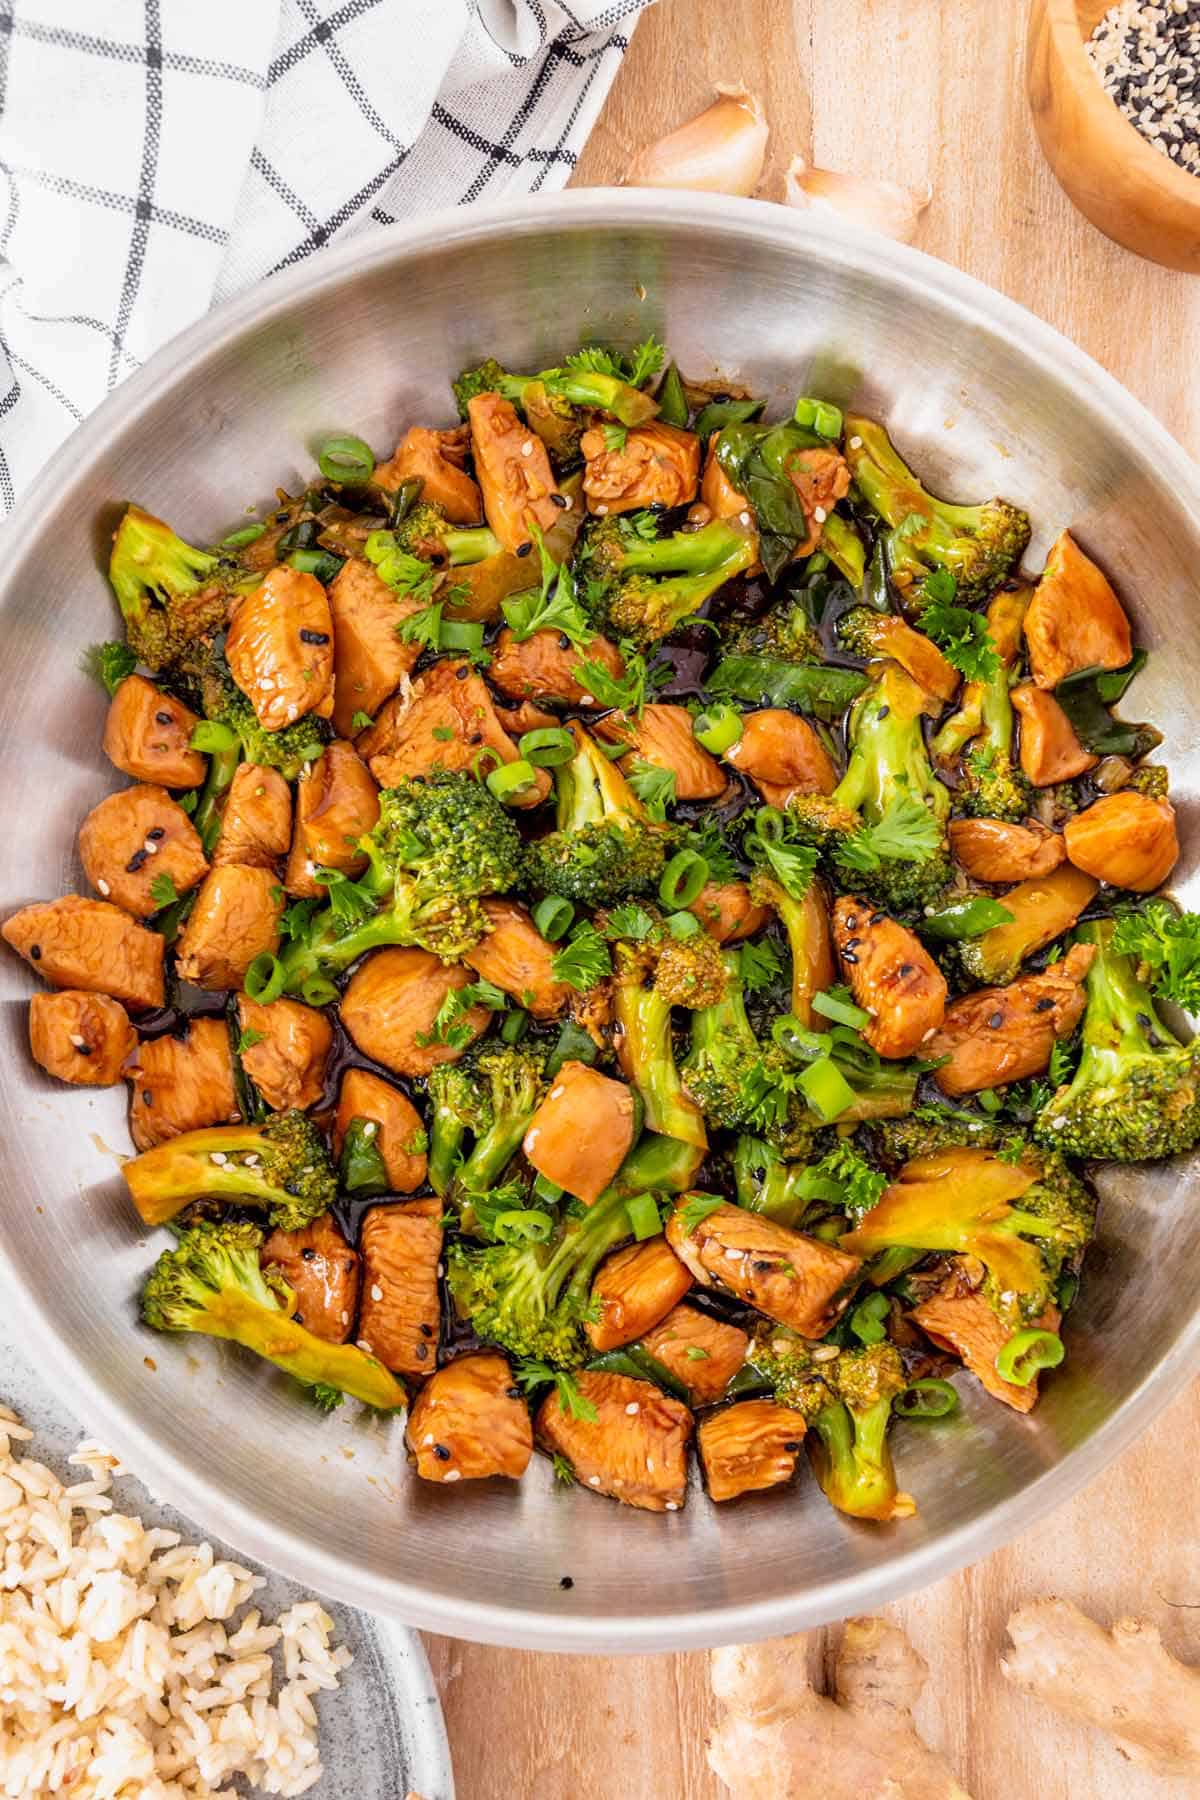 Easy Chicken And Broccoli Recipe